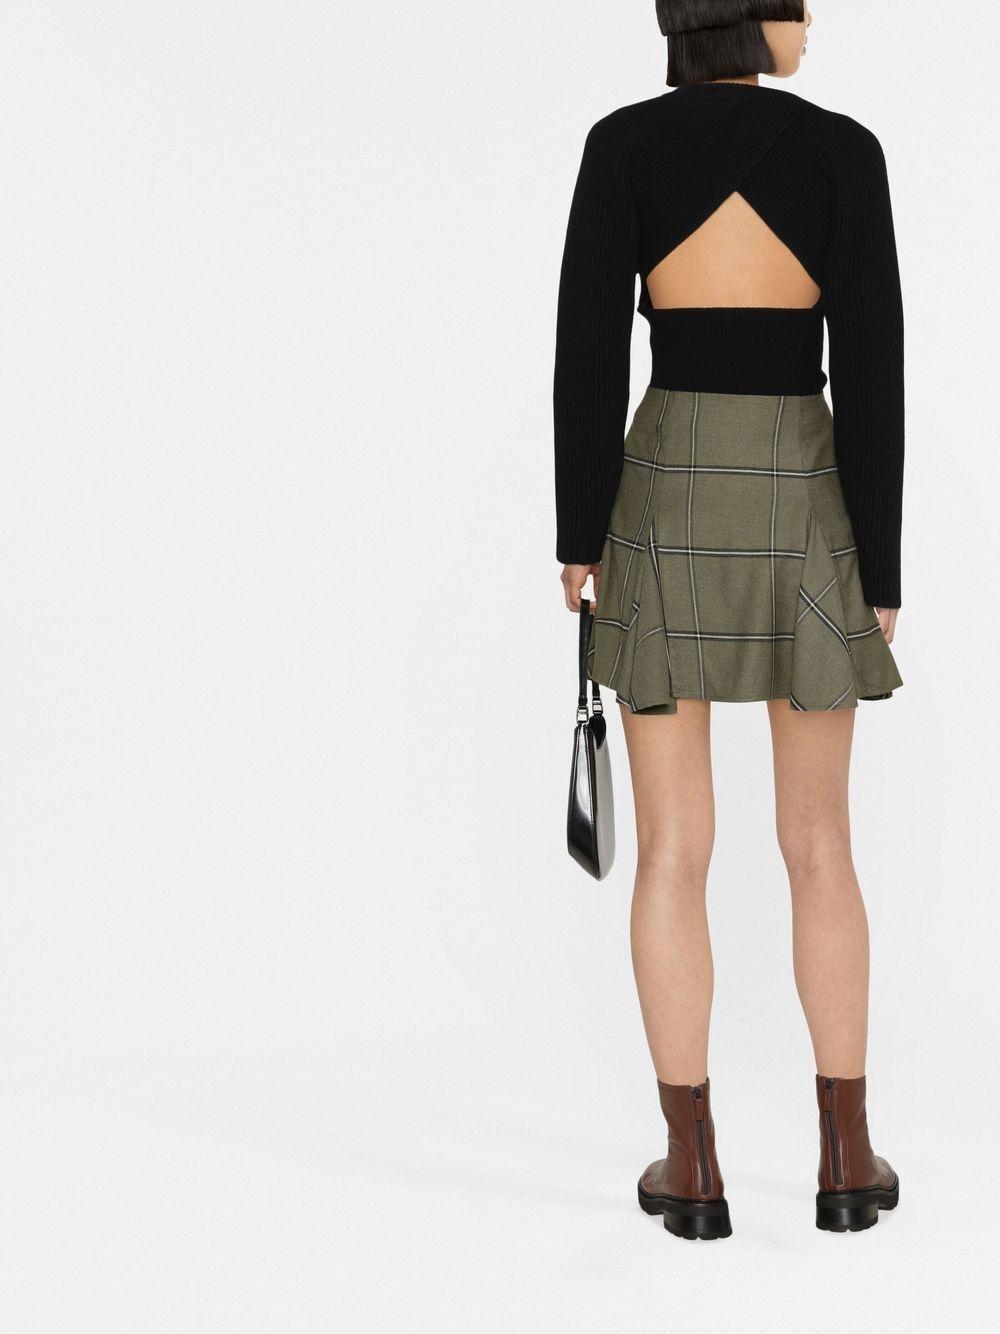 Designer Skirts - Maxi Skirt, Midi Skirt, Mini Skirt | PRISCAVera